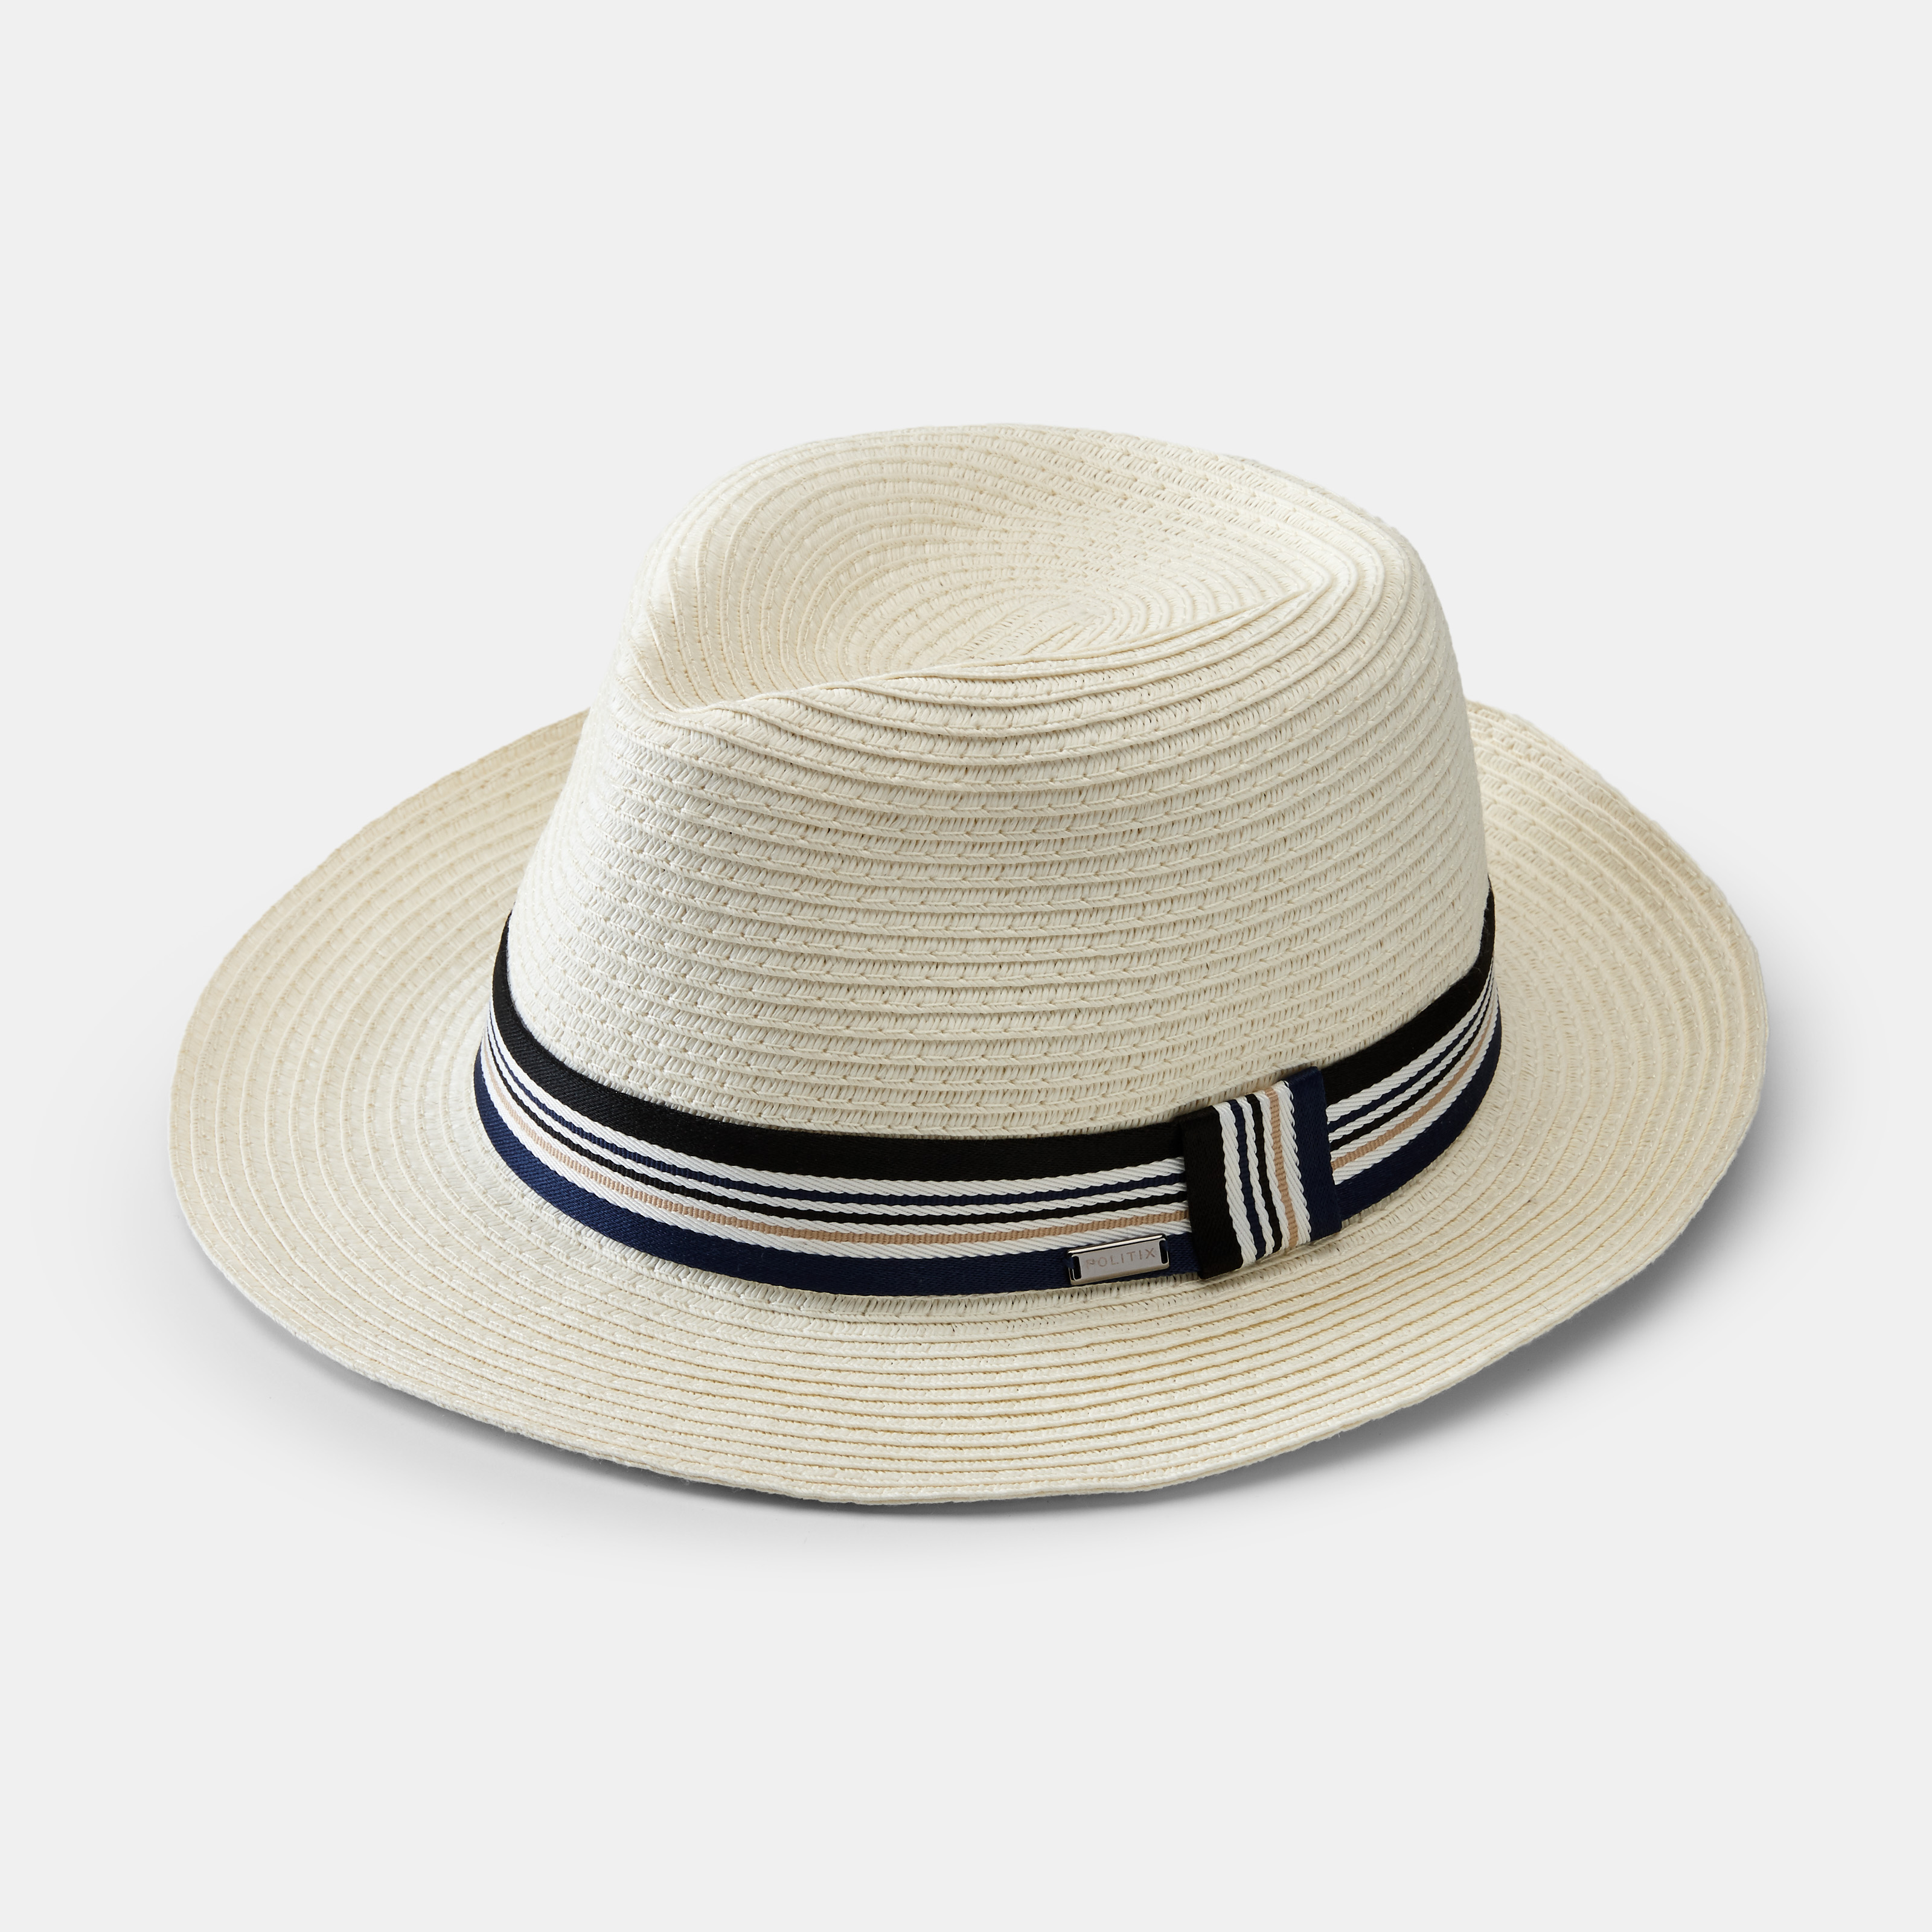 Sicile Hat, White, swatch